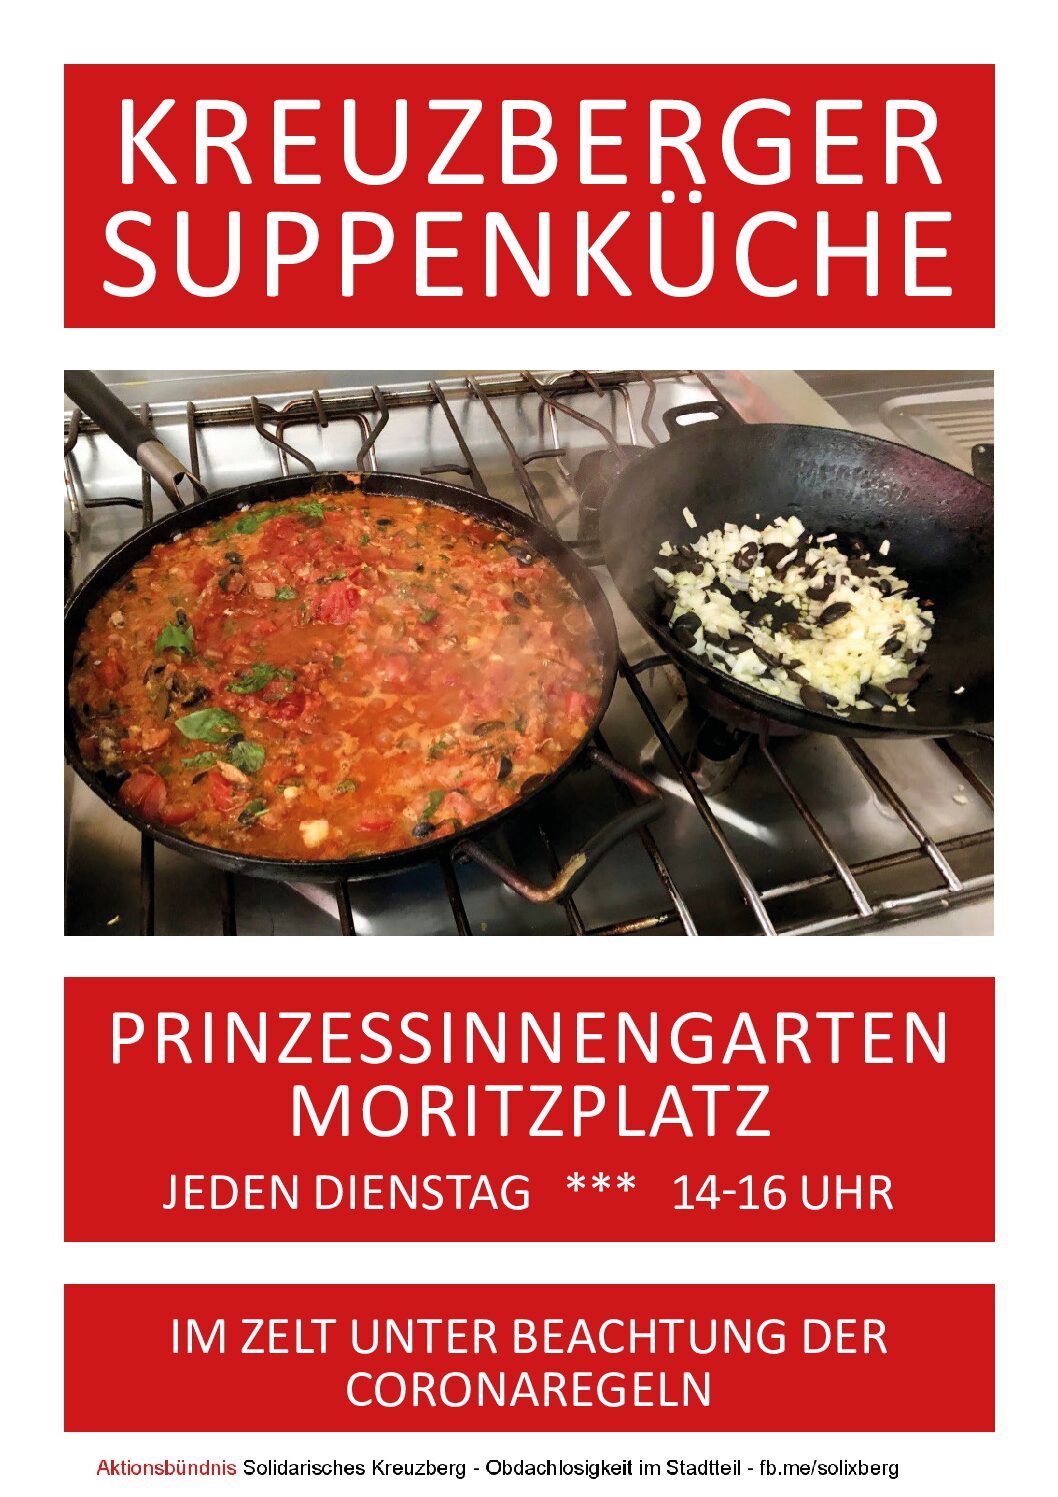 Kreuzberger Suppenküche wieder am Start